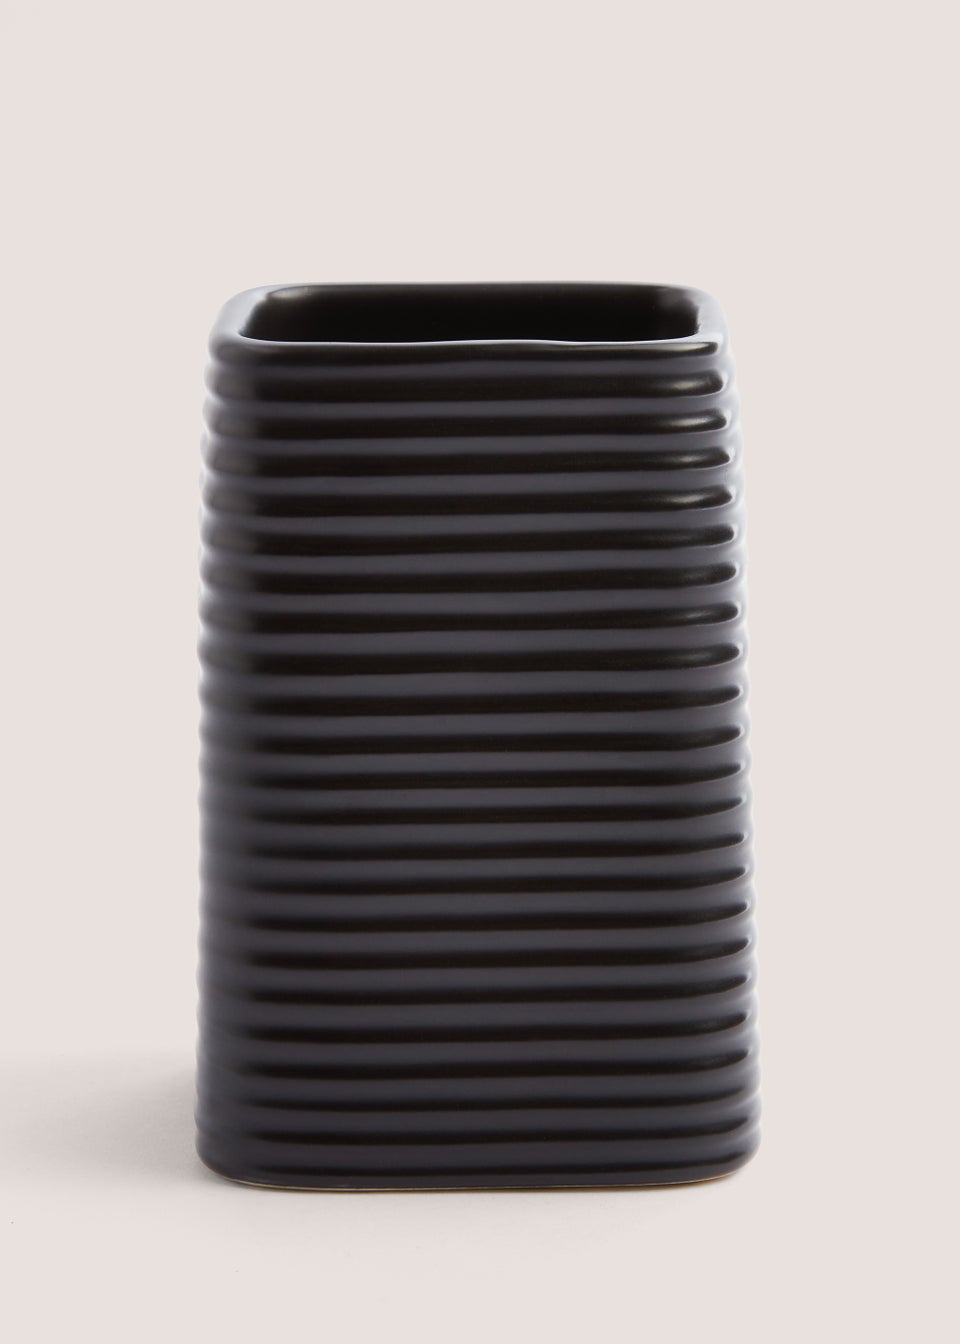 Black Ceramic Bathroom Tumbler (7.5cm x 7.5cm x 11.5cm)